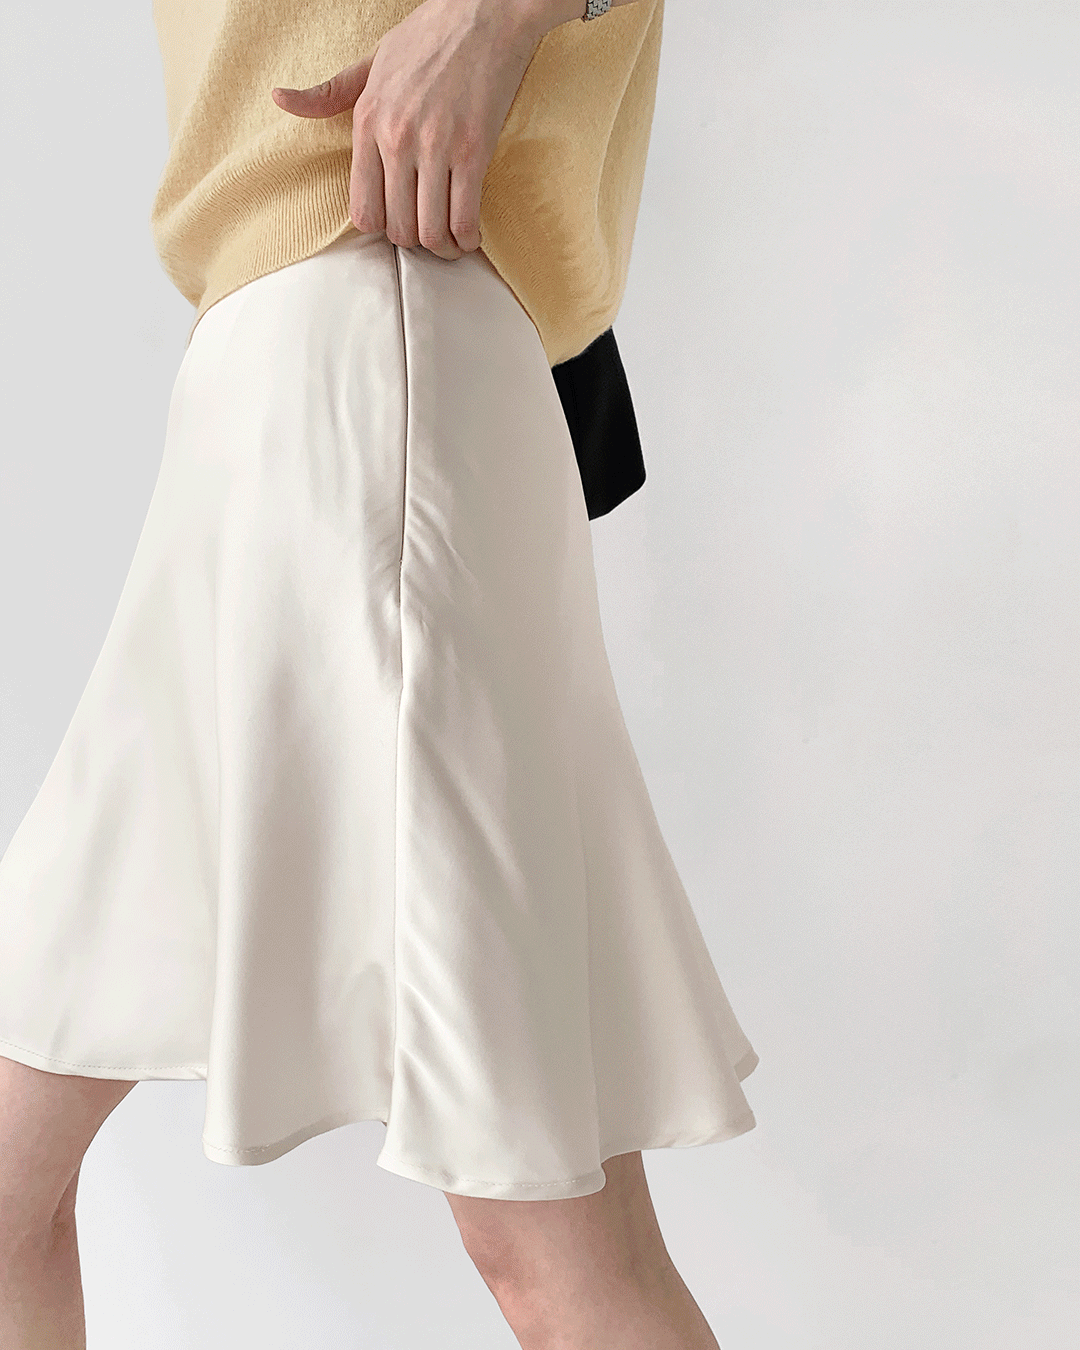 Lemon skirt